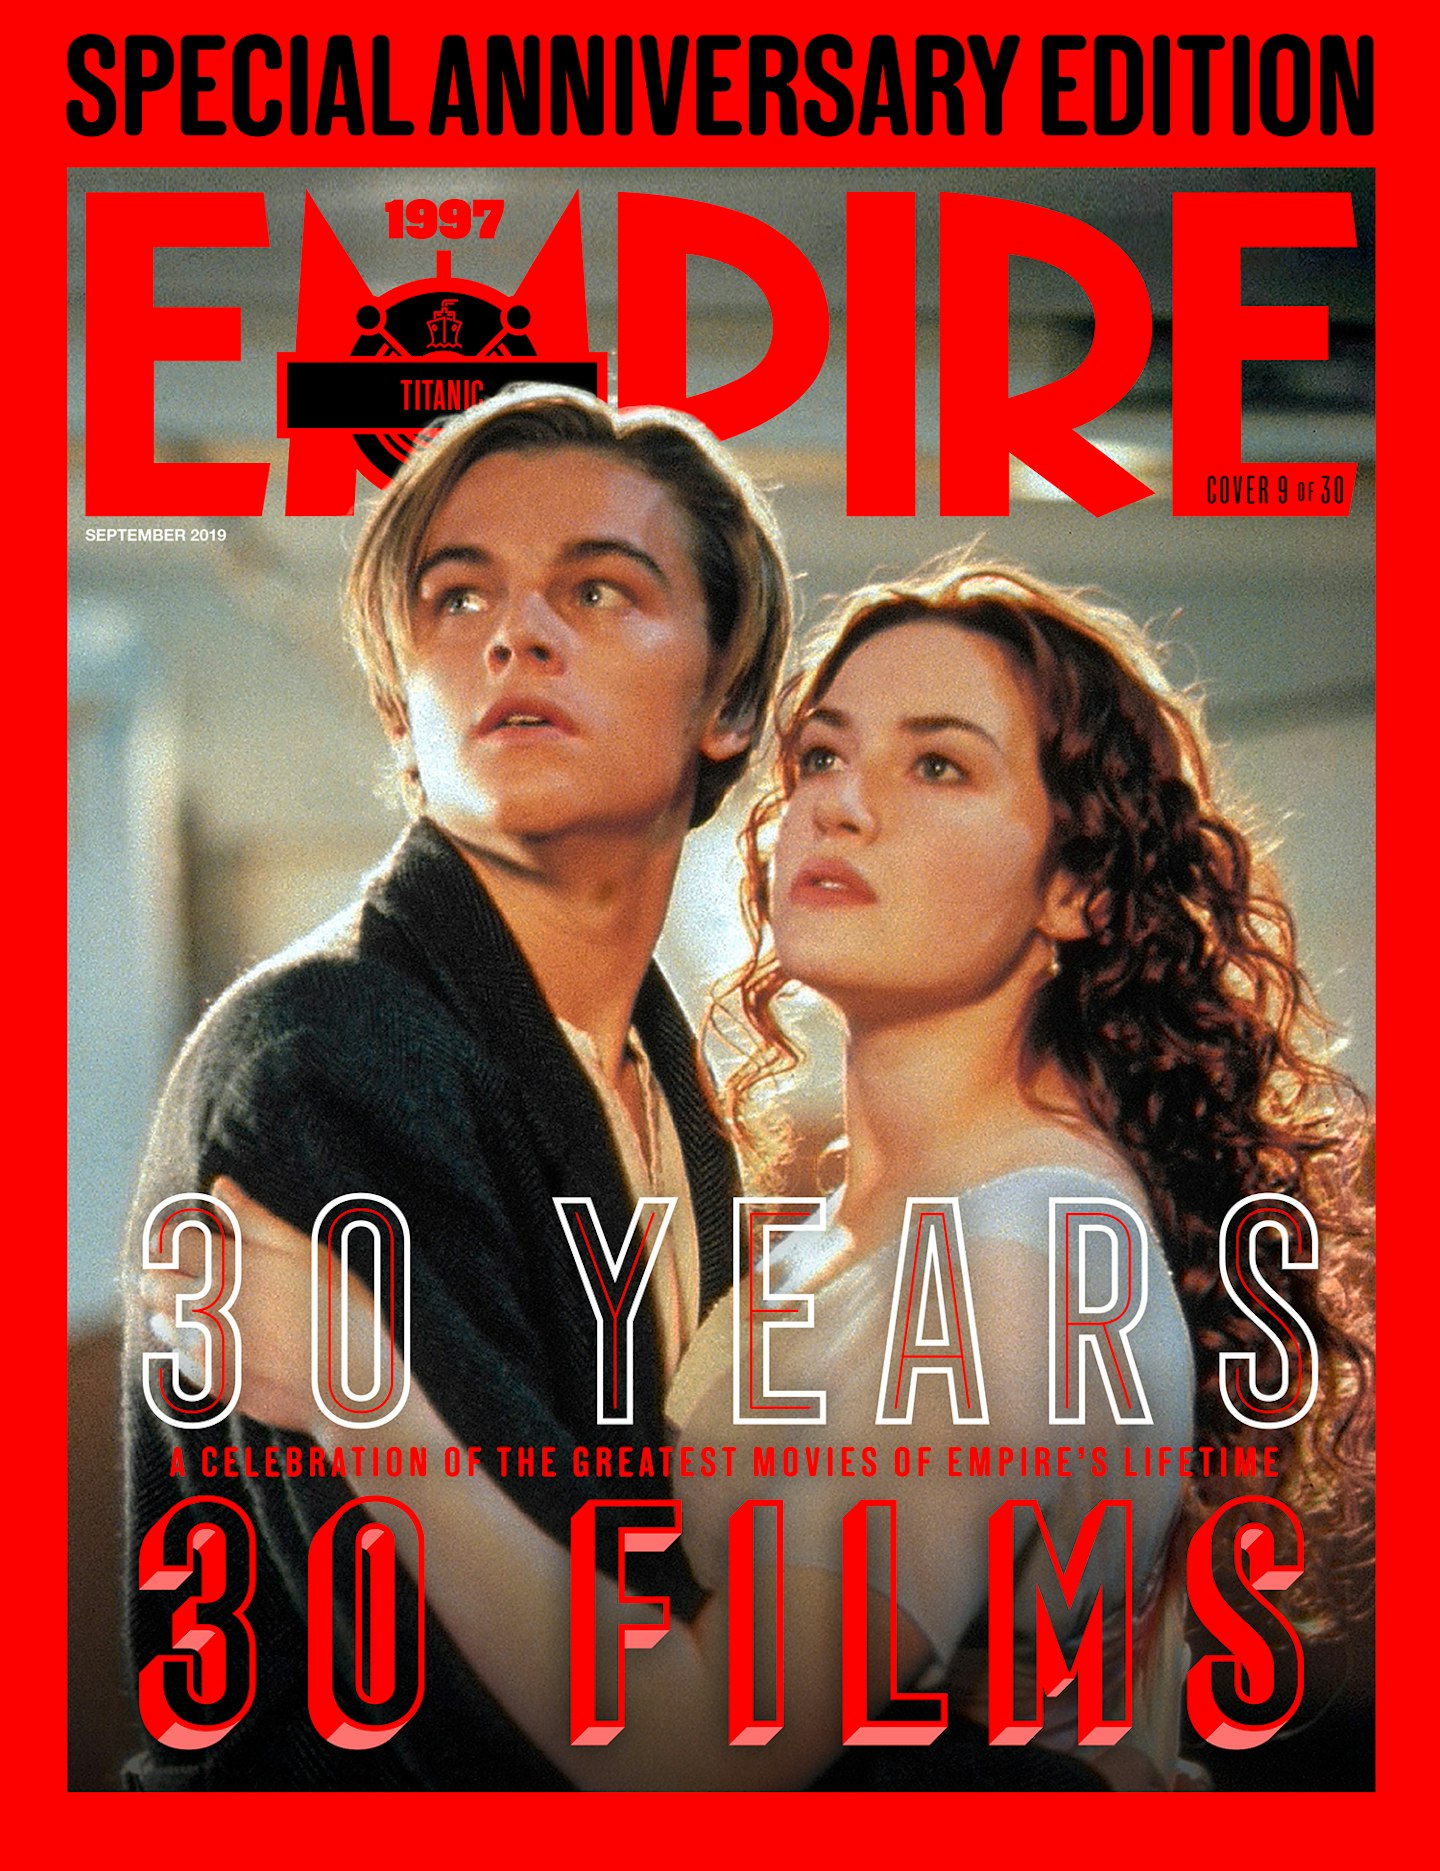 Empire's 30th Anniversary Edition Covers – Titanic